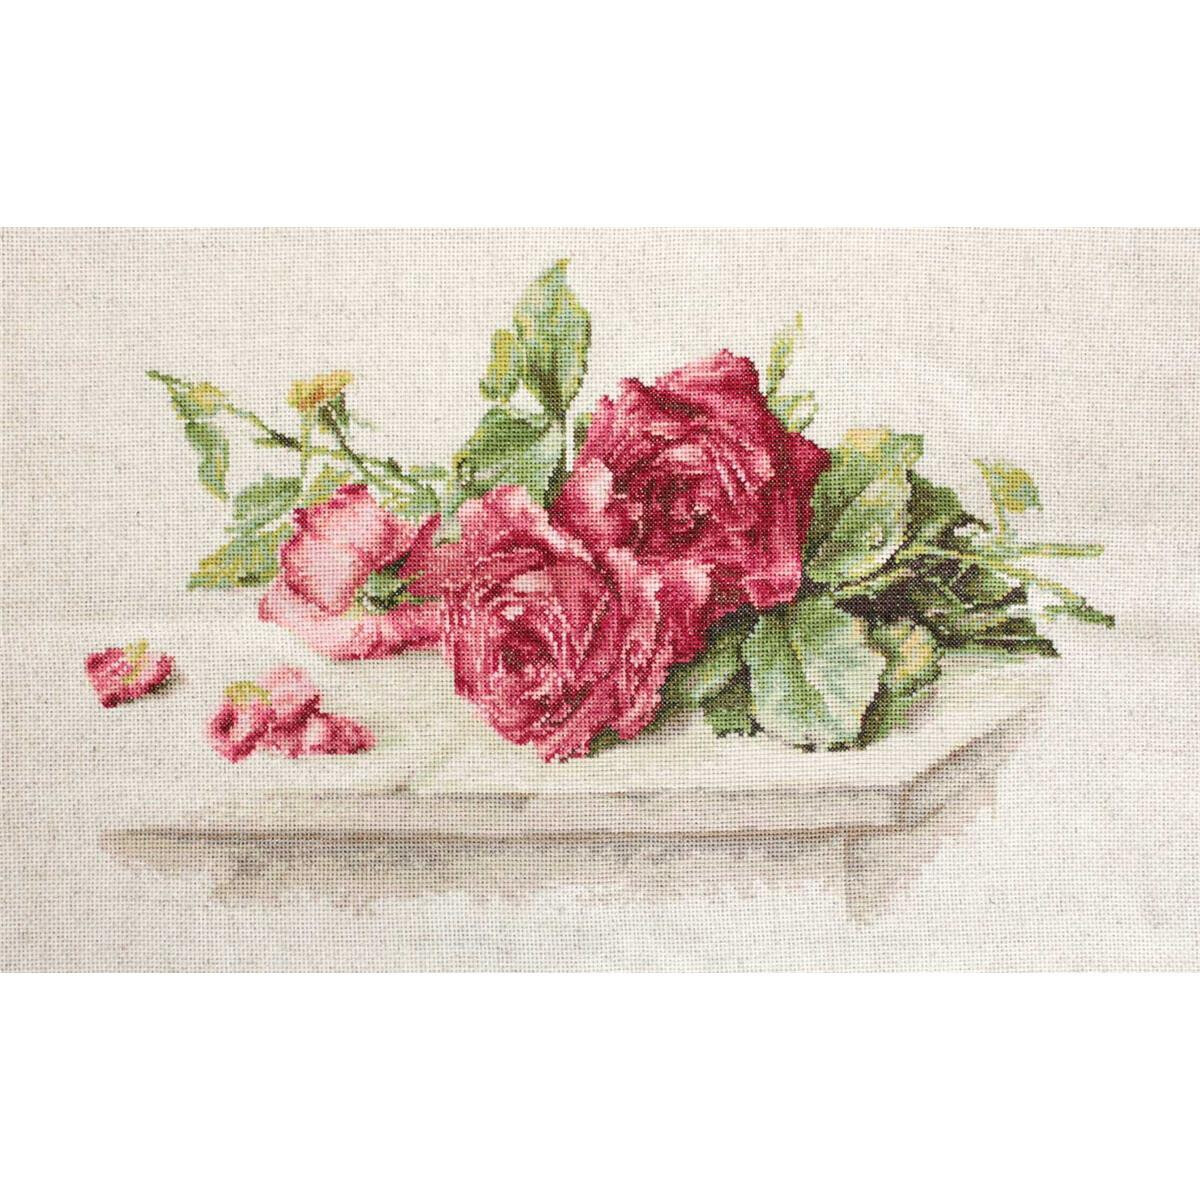 Een borduurpakket van Luca bevat een tros felroze rozen...